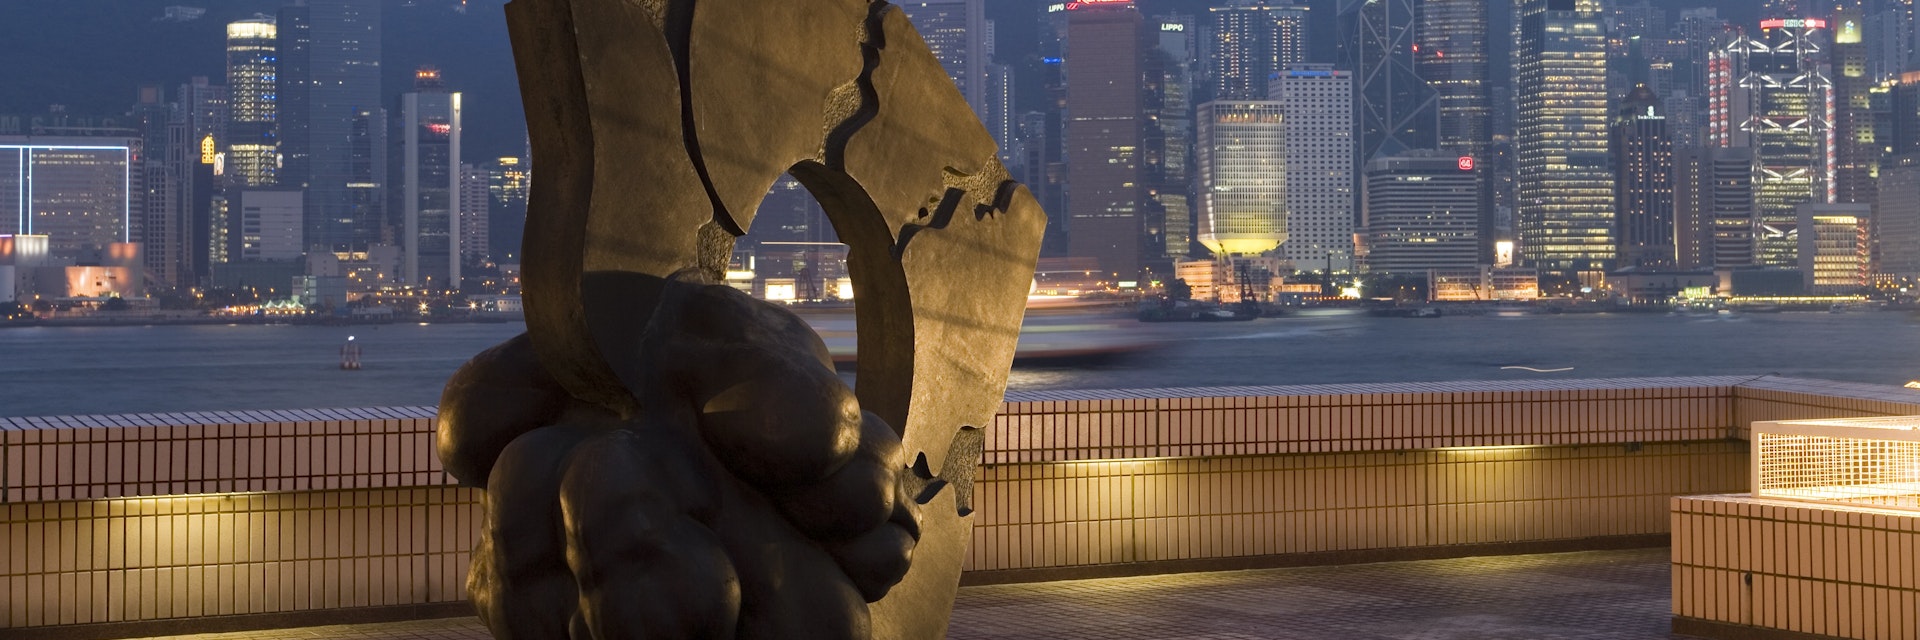 Sculpture outside Hong Kong Museum of Art, Tsim Sha Tsui.